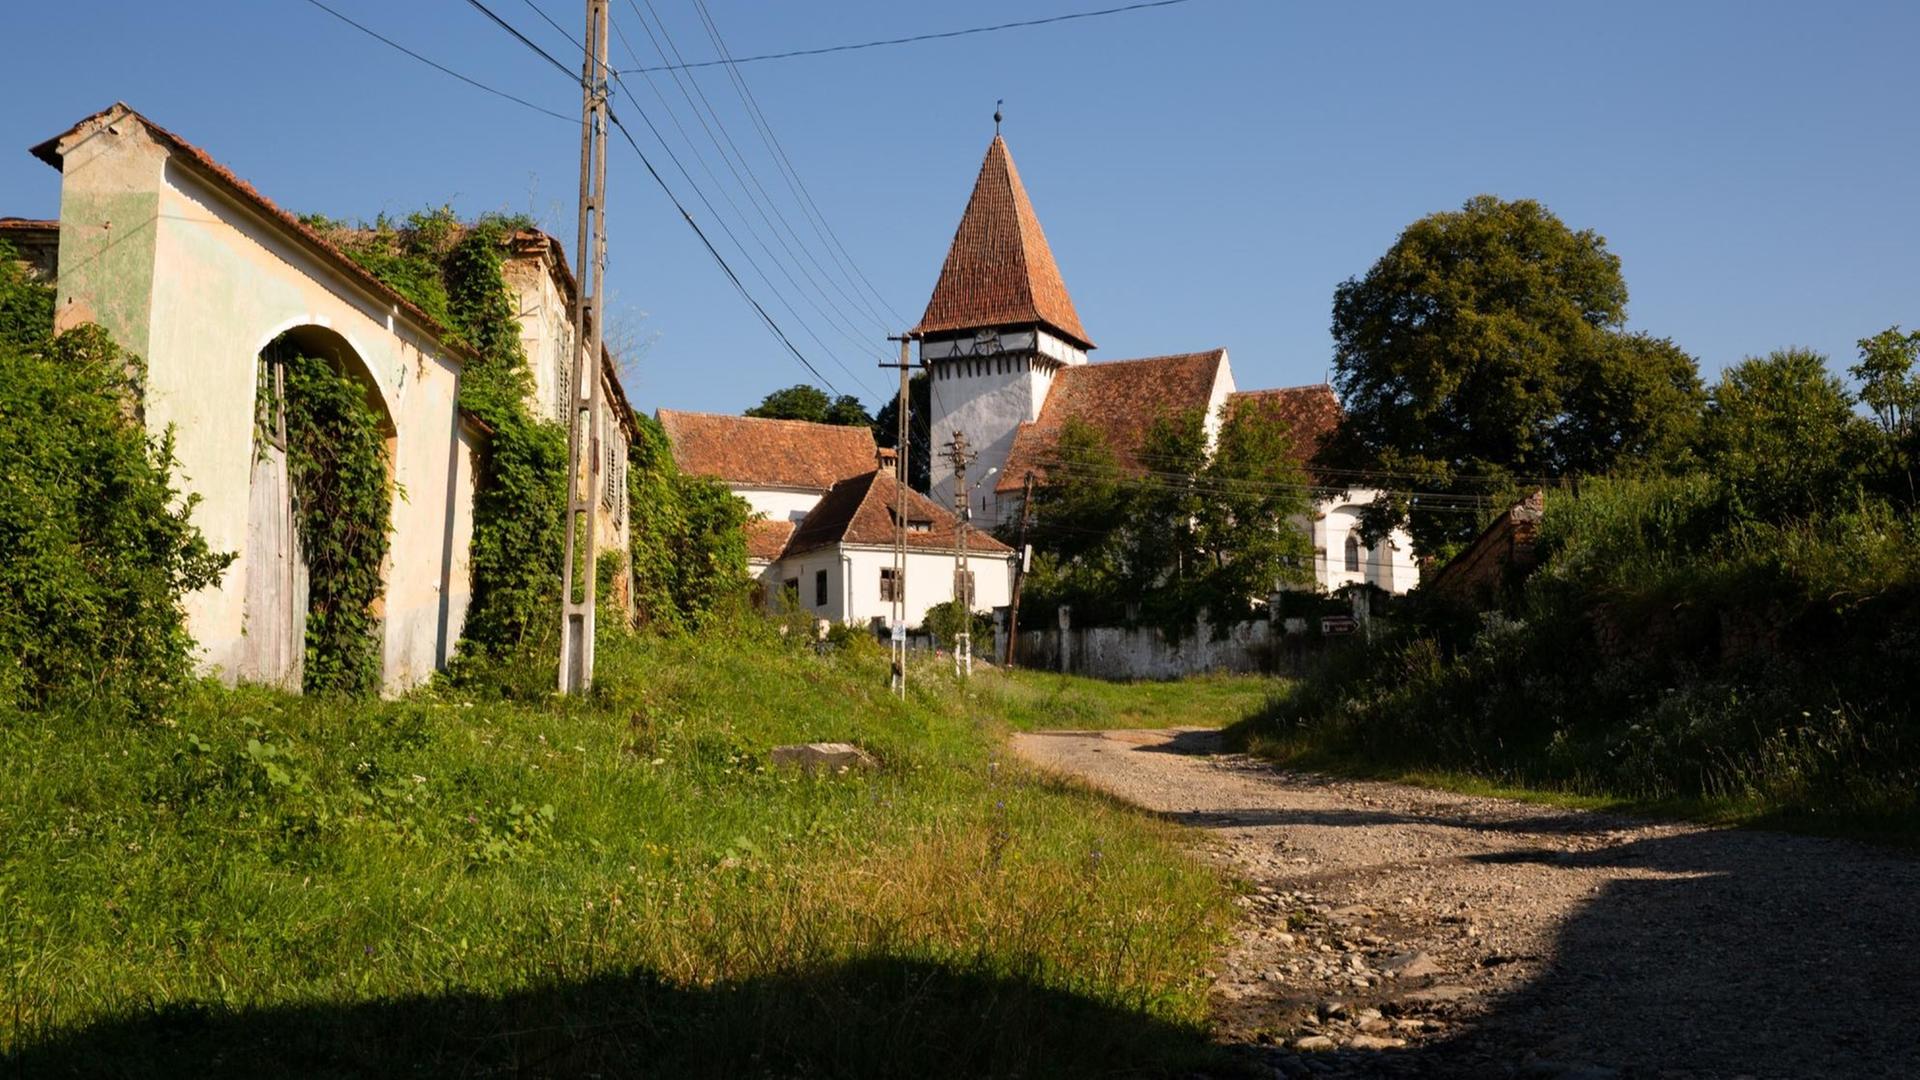 Blick auf die Kirche von Somartin, einst ein siebenbürgisch-sächsischer Ort